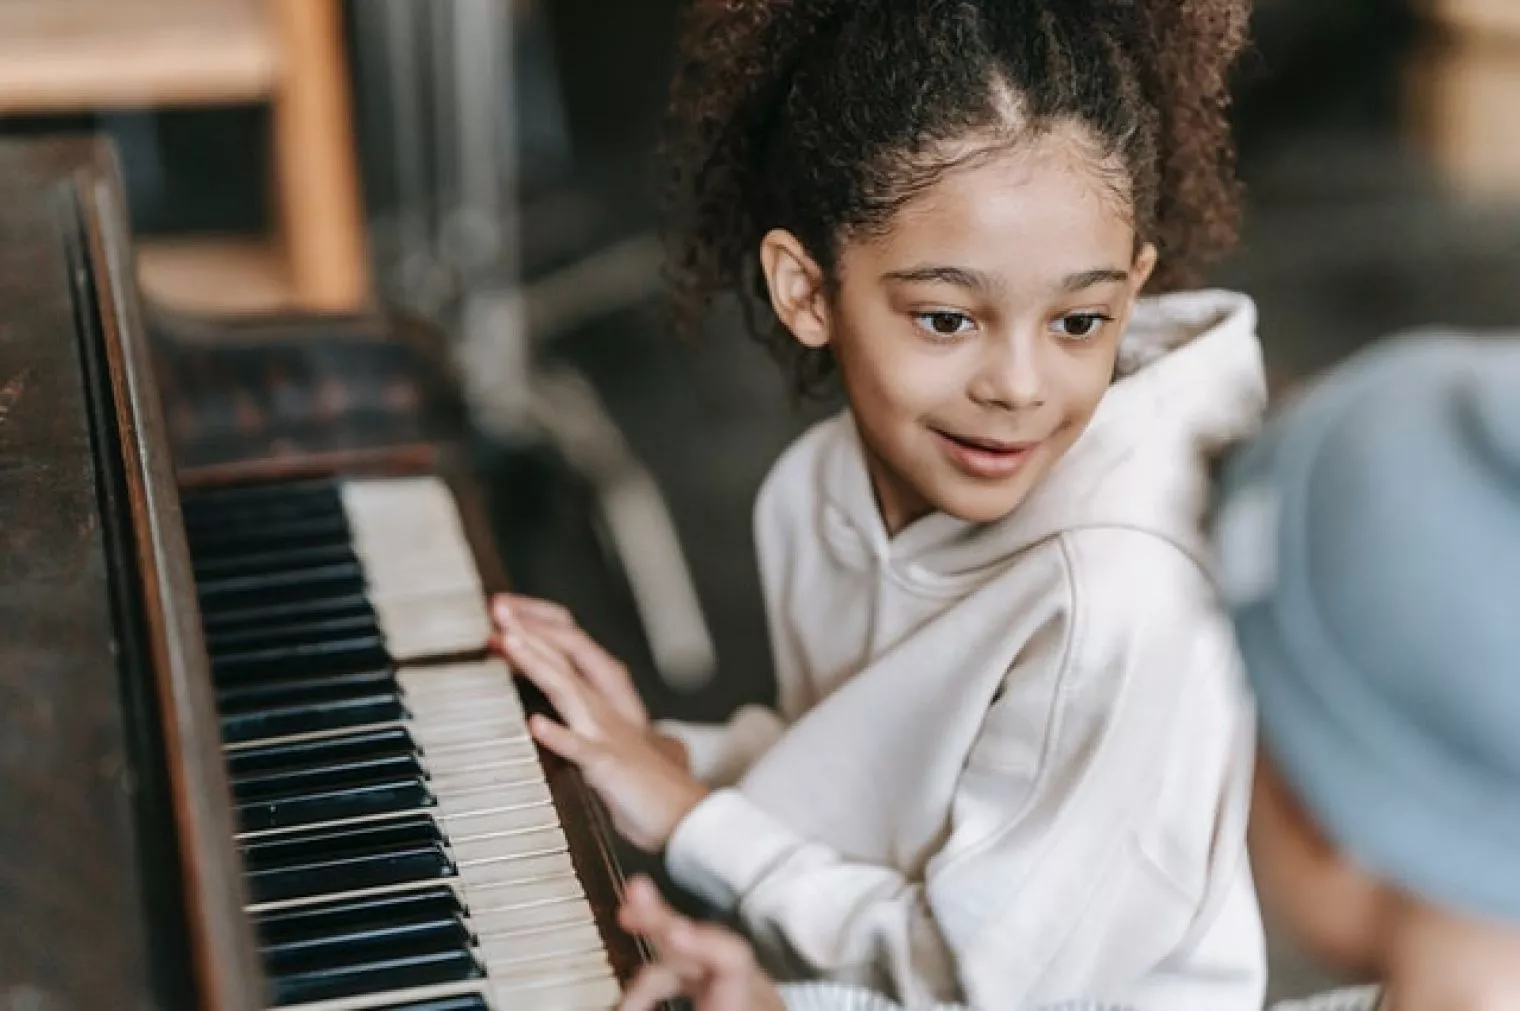 Manfaat yang Bisa Anak Dapatkan dari Bermain Musik